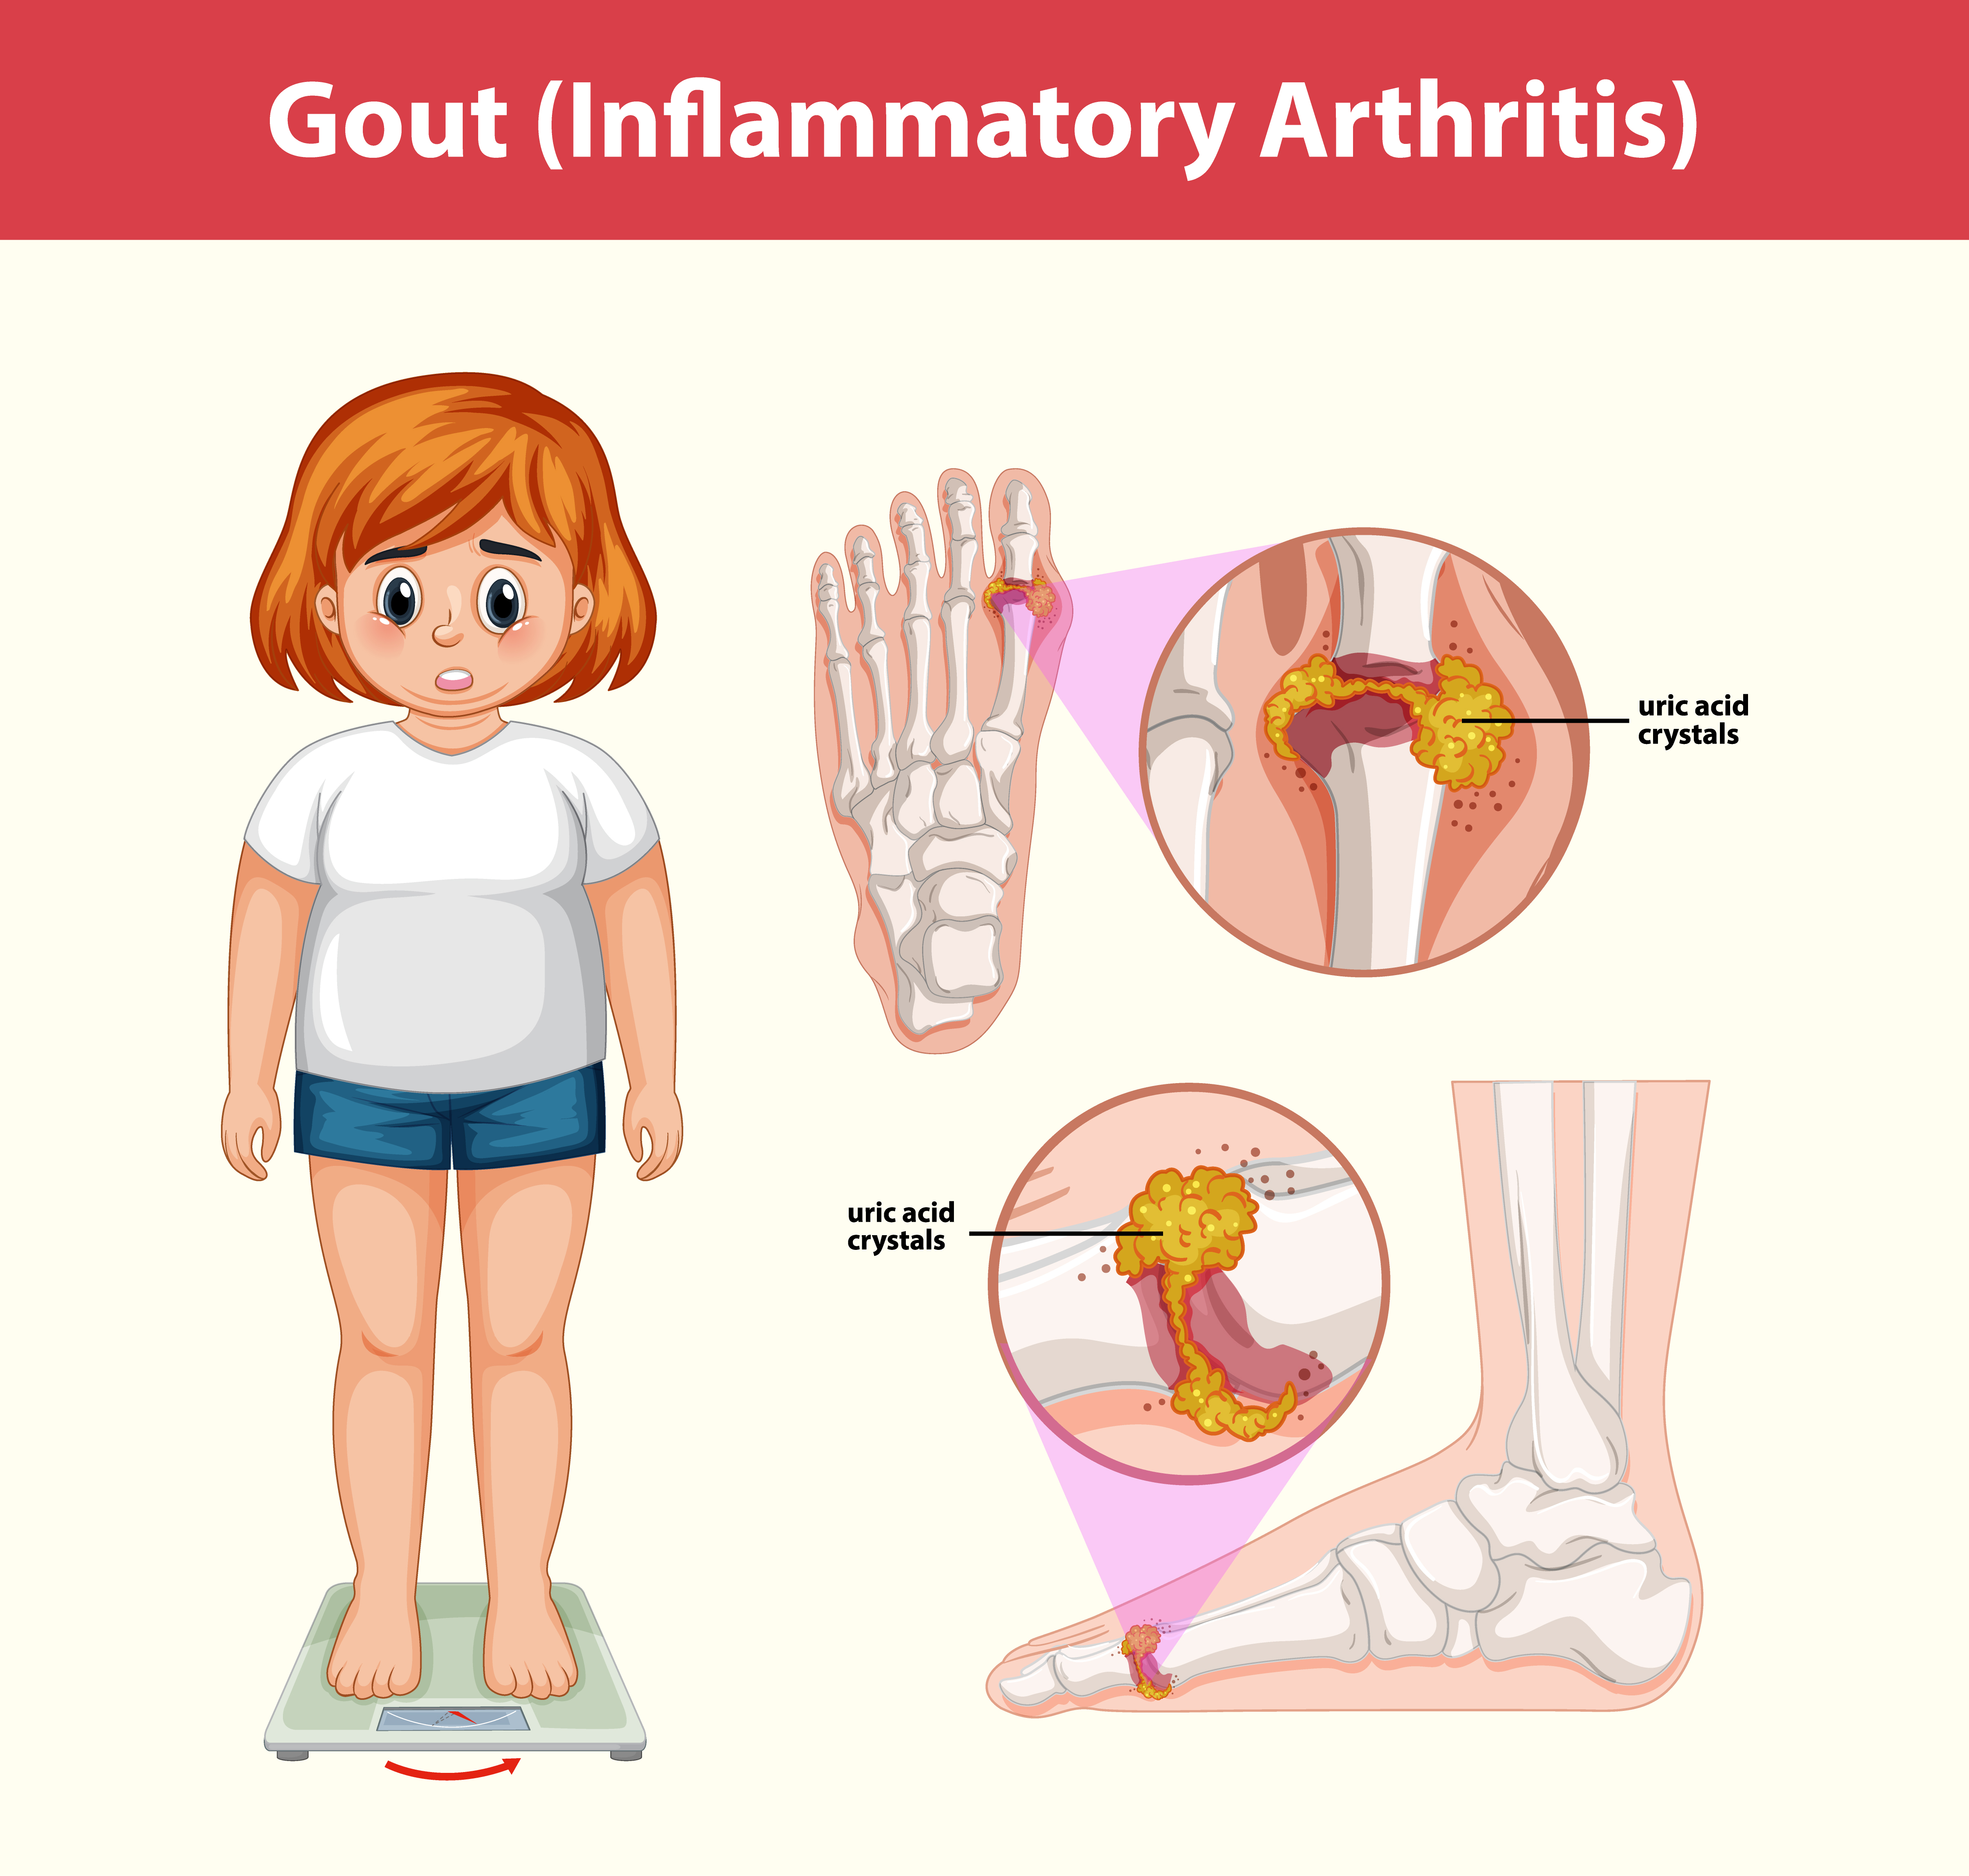 통풍 이미지 - gout (inflammatory arthritis) medical information